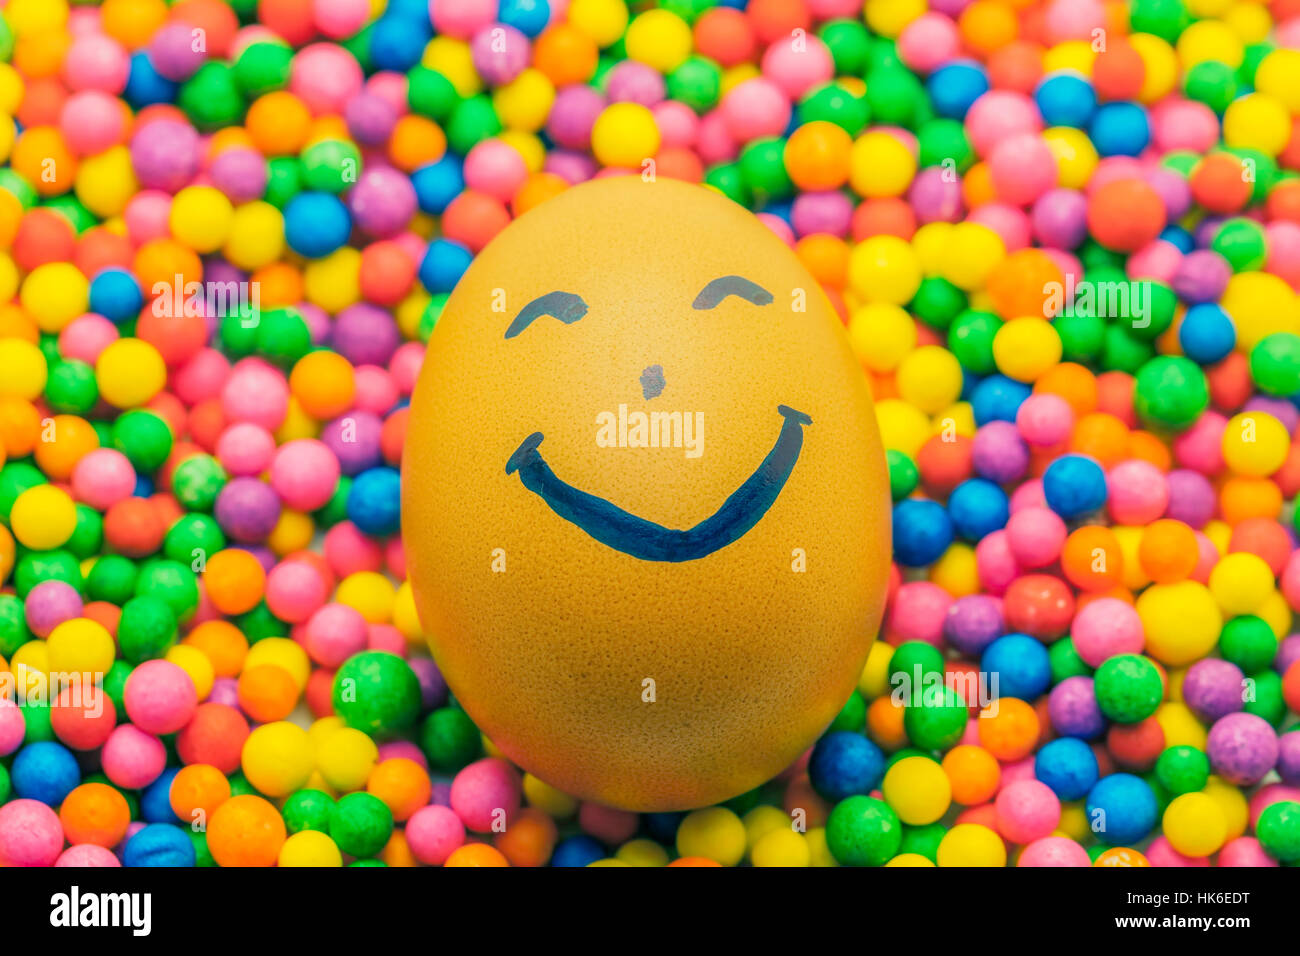 Braune Hühner Ei glückliches Gesicht auf dem bunten Hintergrund voller Bonbons und Konfetti Stockfoto